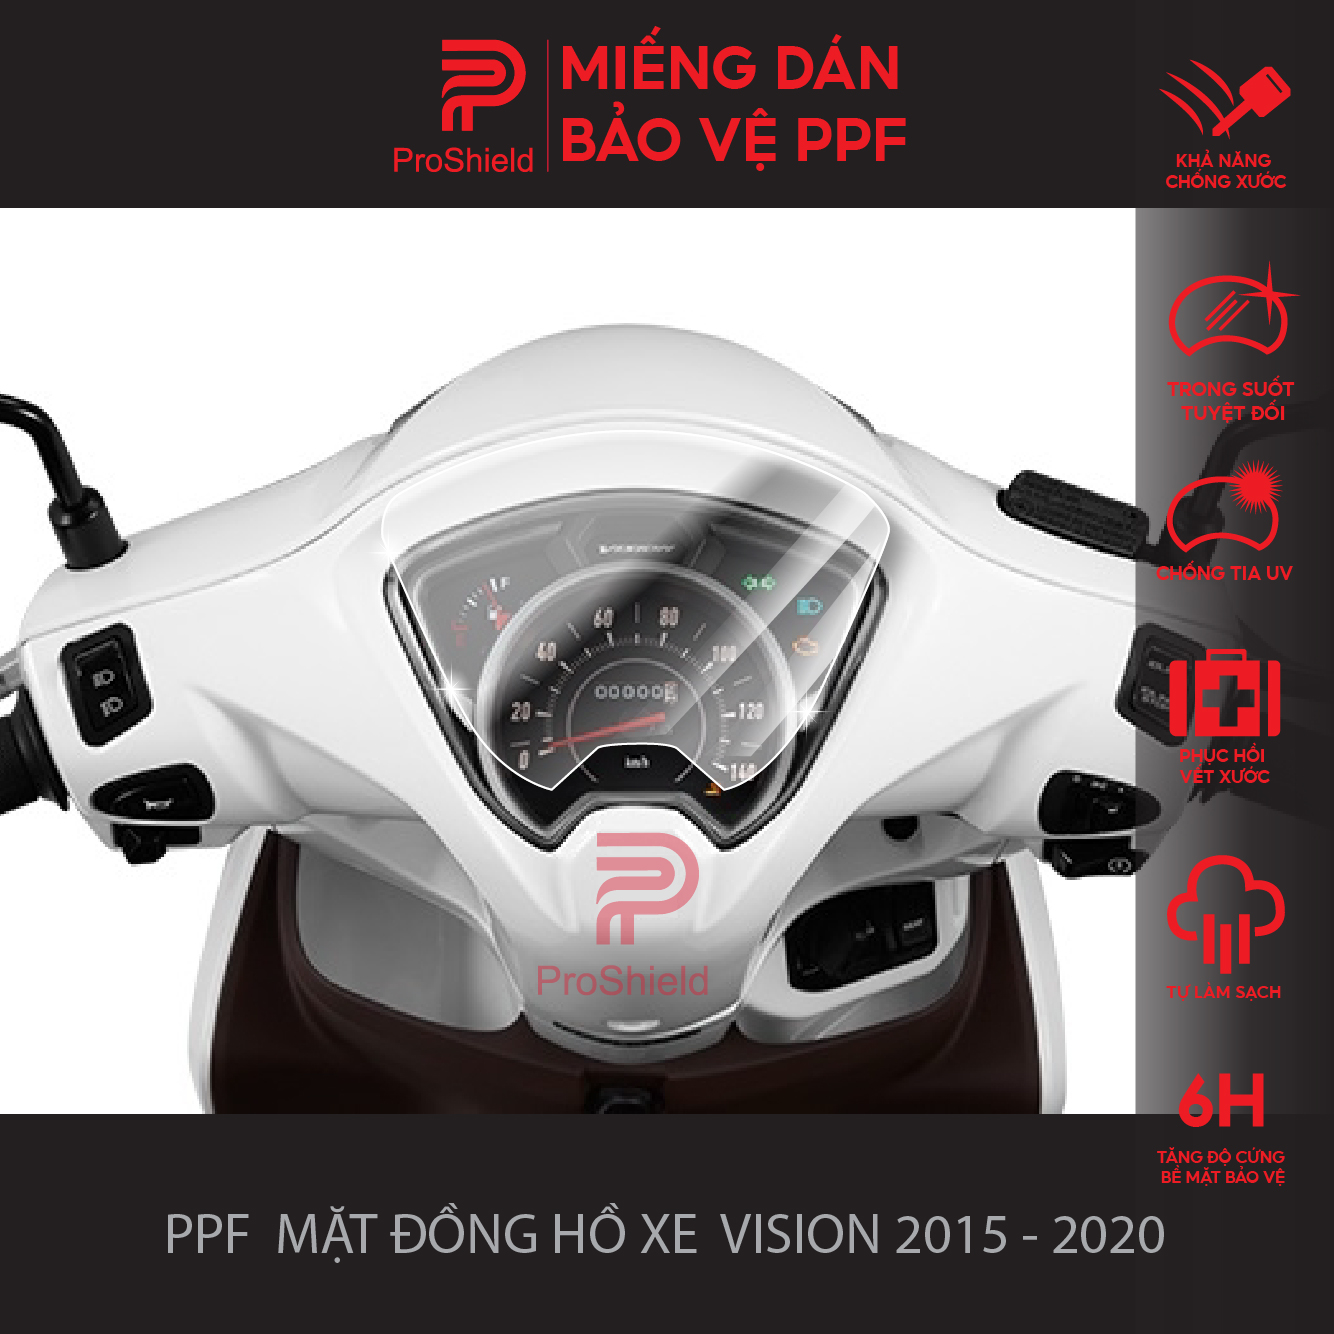 Miếng Dán PPF Bảo Vệ Mặt Đồng Hồ Cho Xe Vision 2015 - 2020